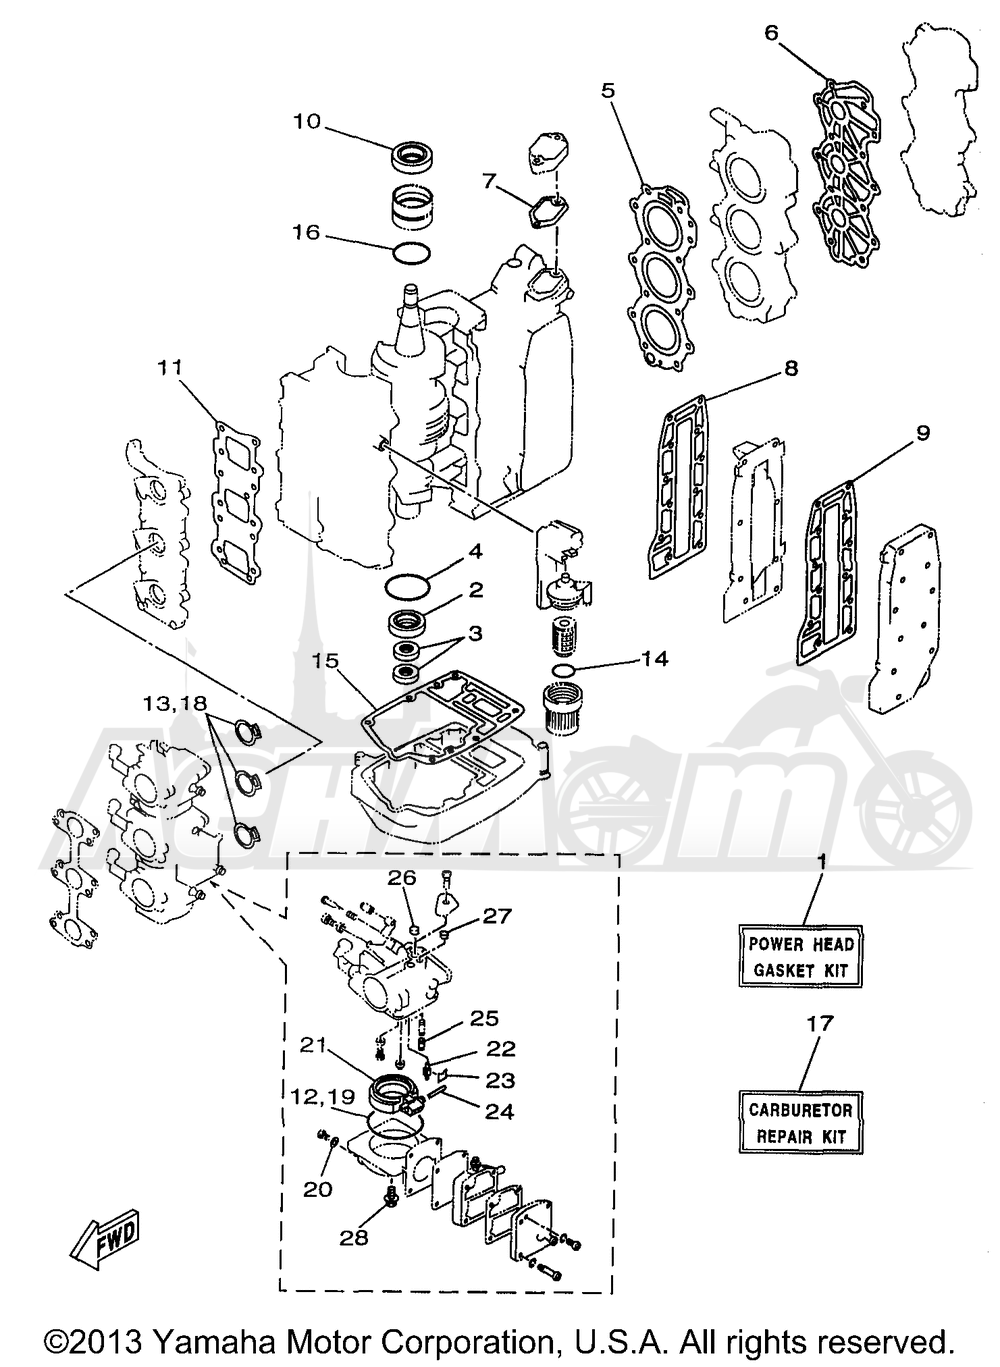 Запчасти для Лодочного мотора Yamaha 1998 25MSHW3/25MLHW3 Раздел: REPAIR KIT 1 | ремкомплект 1